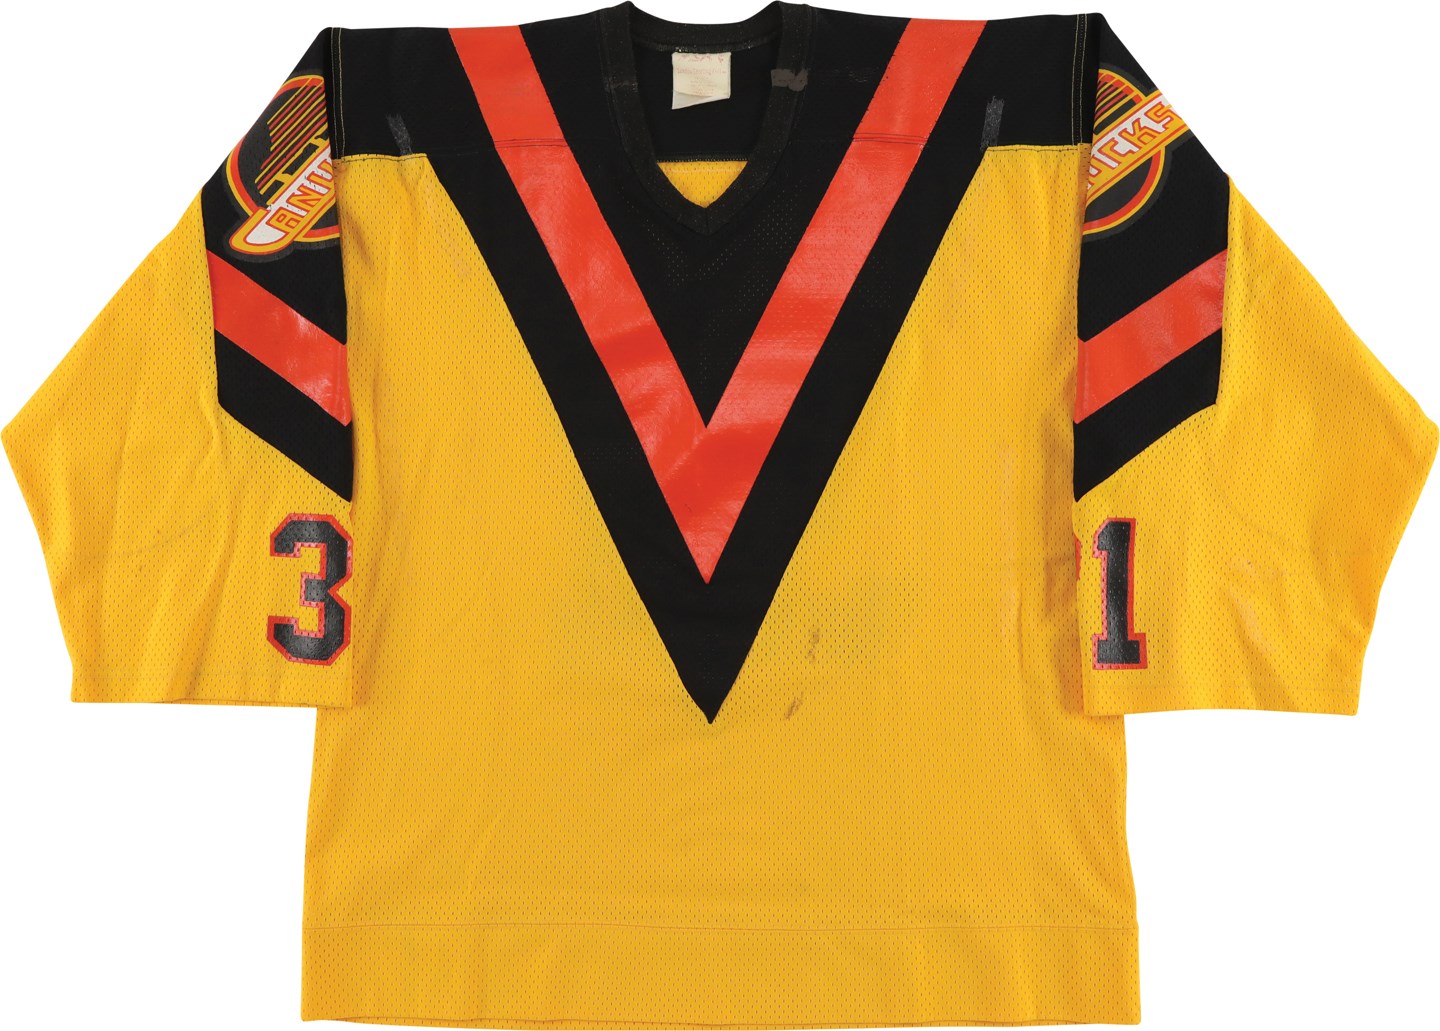 Vintage 70's / 80's Vancouver Canucks NHL hockey jersey.